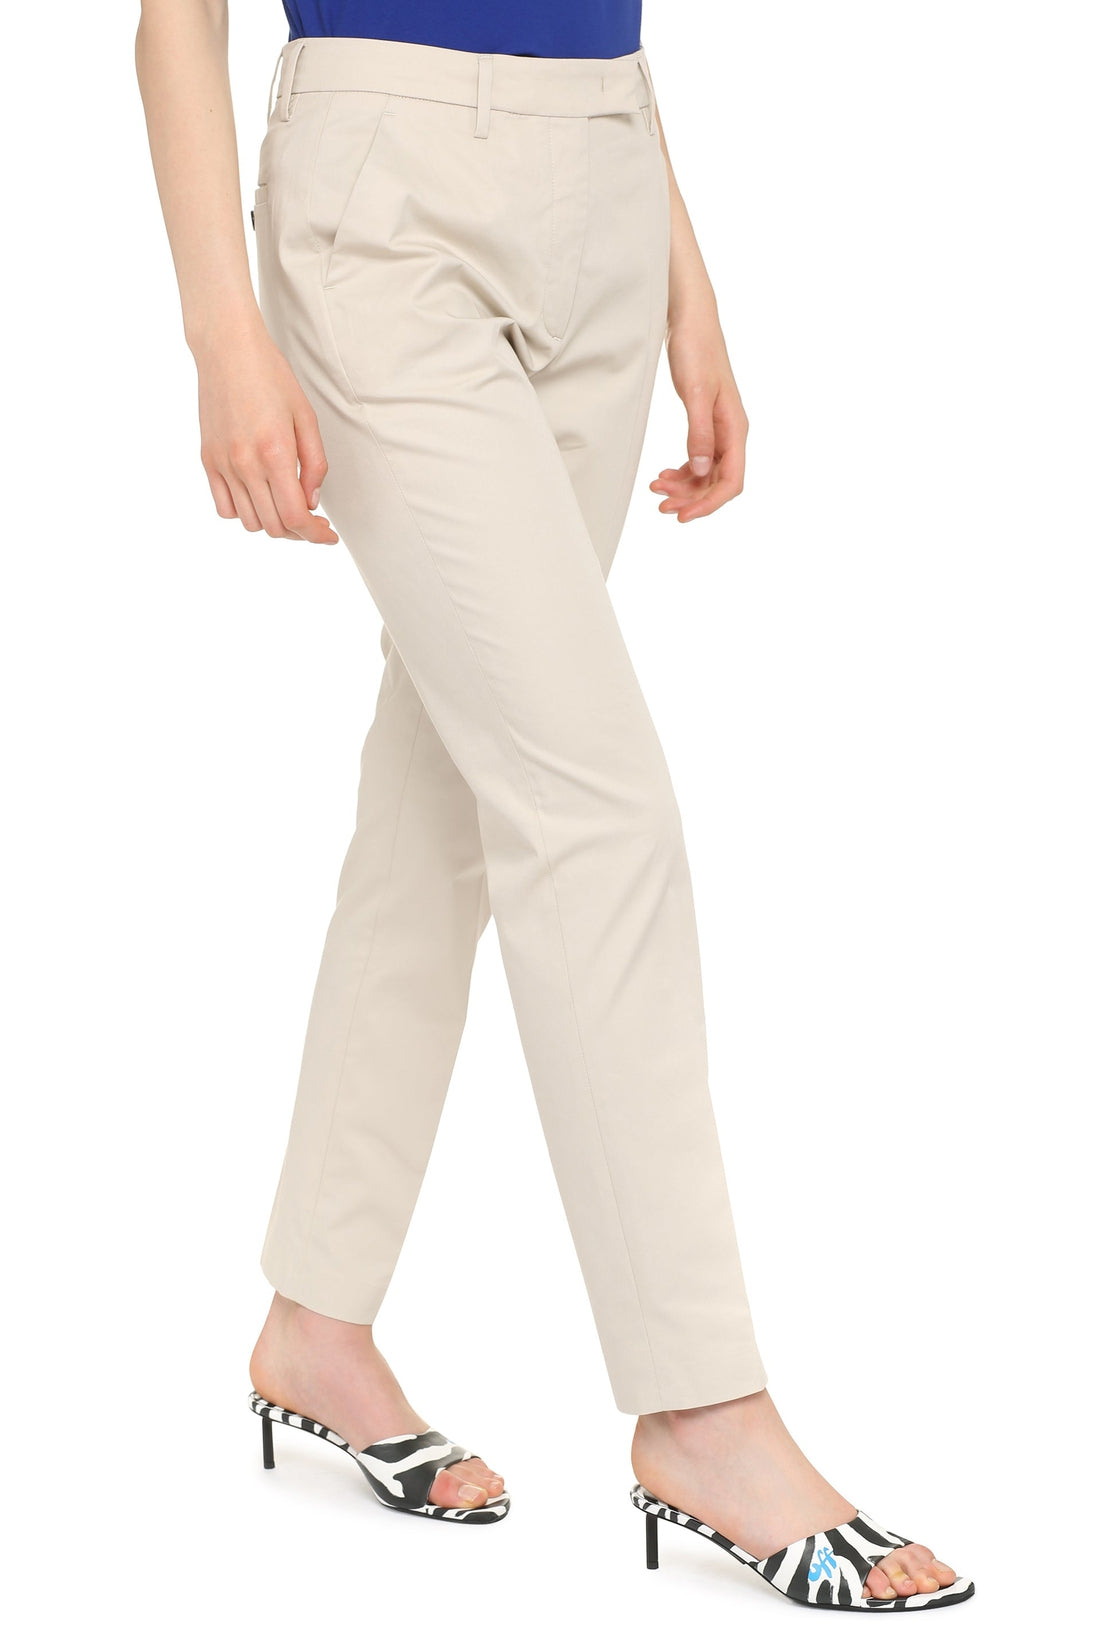 Piralo-OUTLET-SALE-Stretch cotton trousers-ARCHIVIST